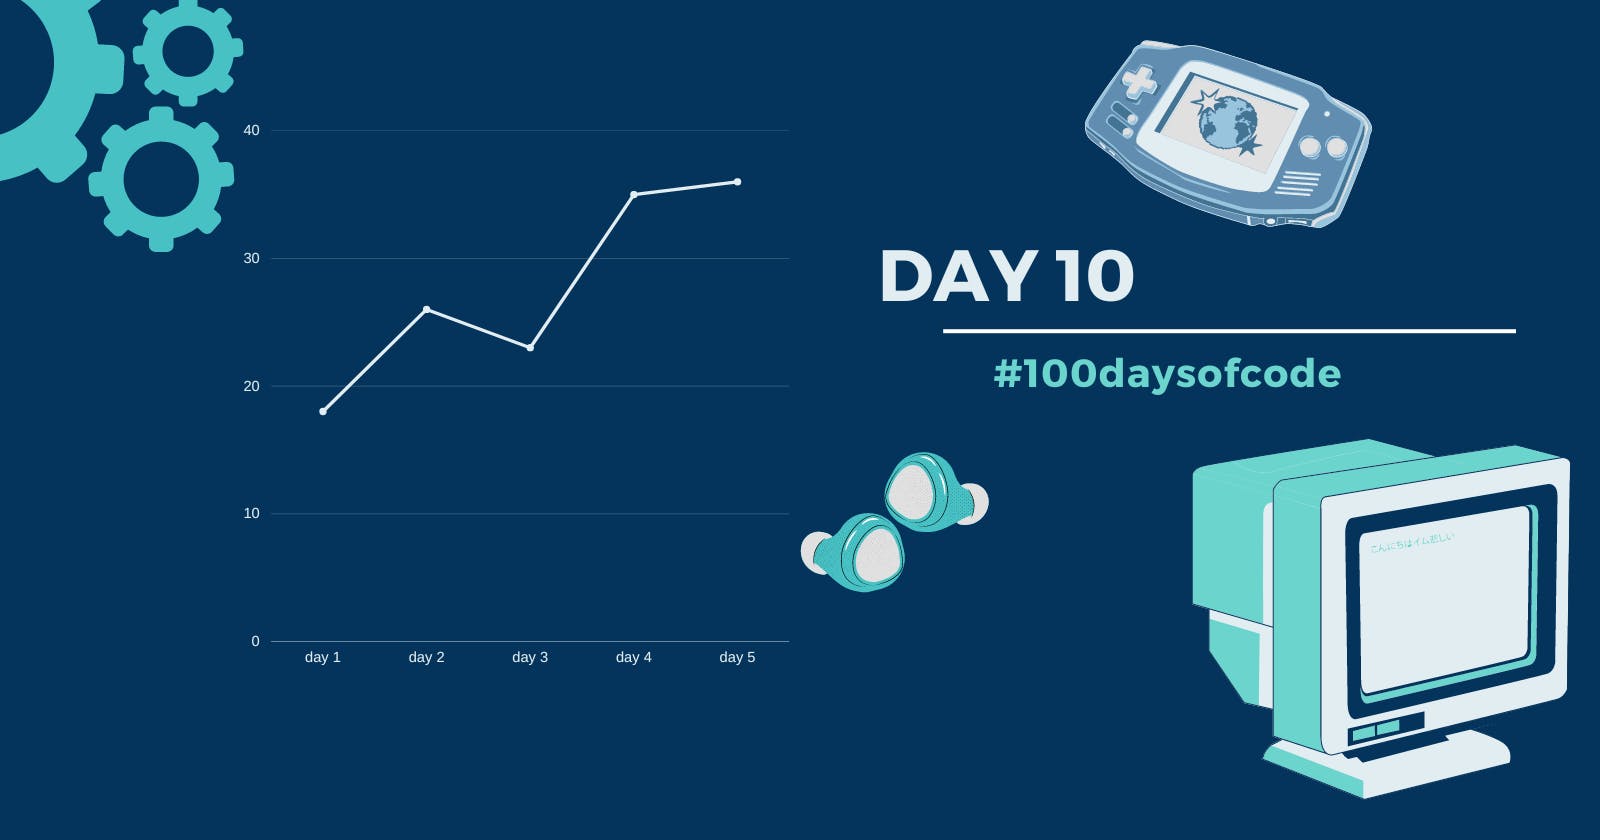 Day 10 in #100daysofcode challenge